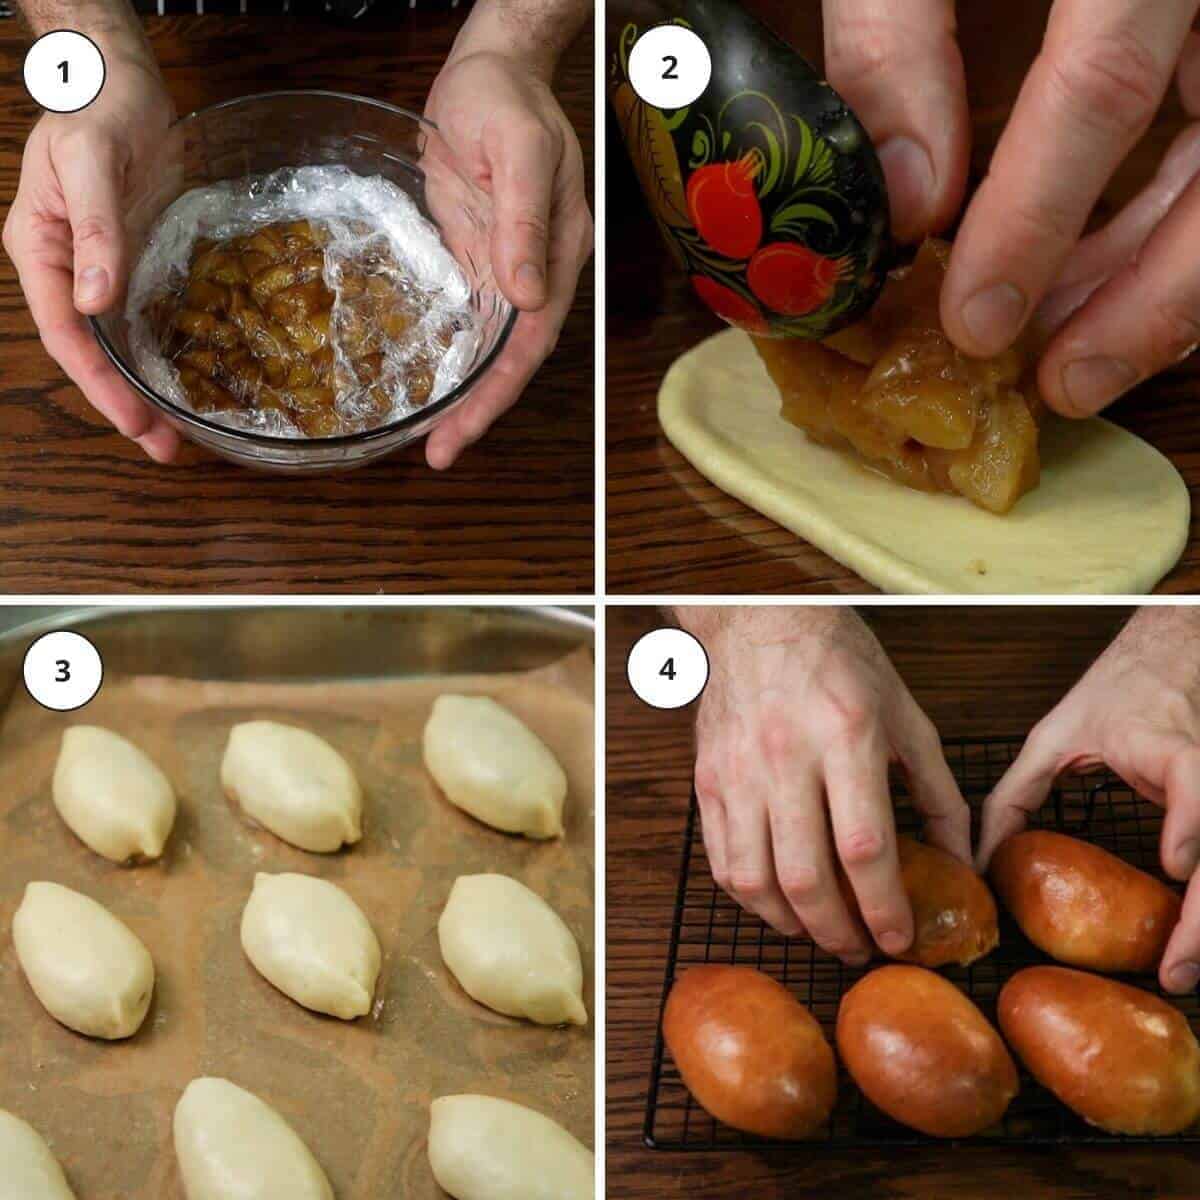 Picture steps for making apple piroshki.